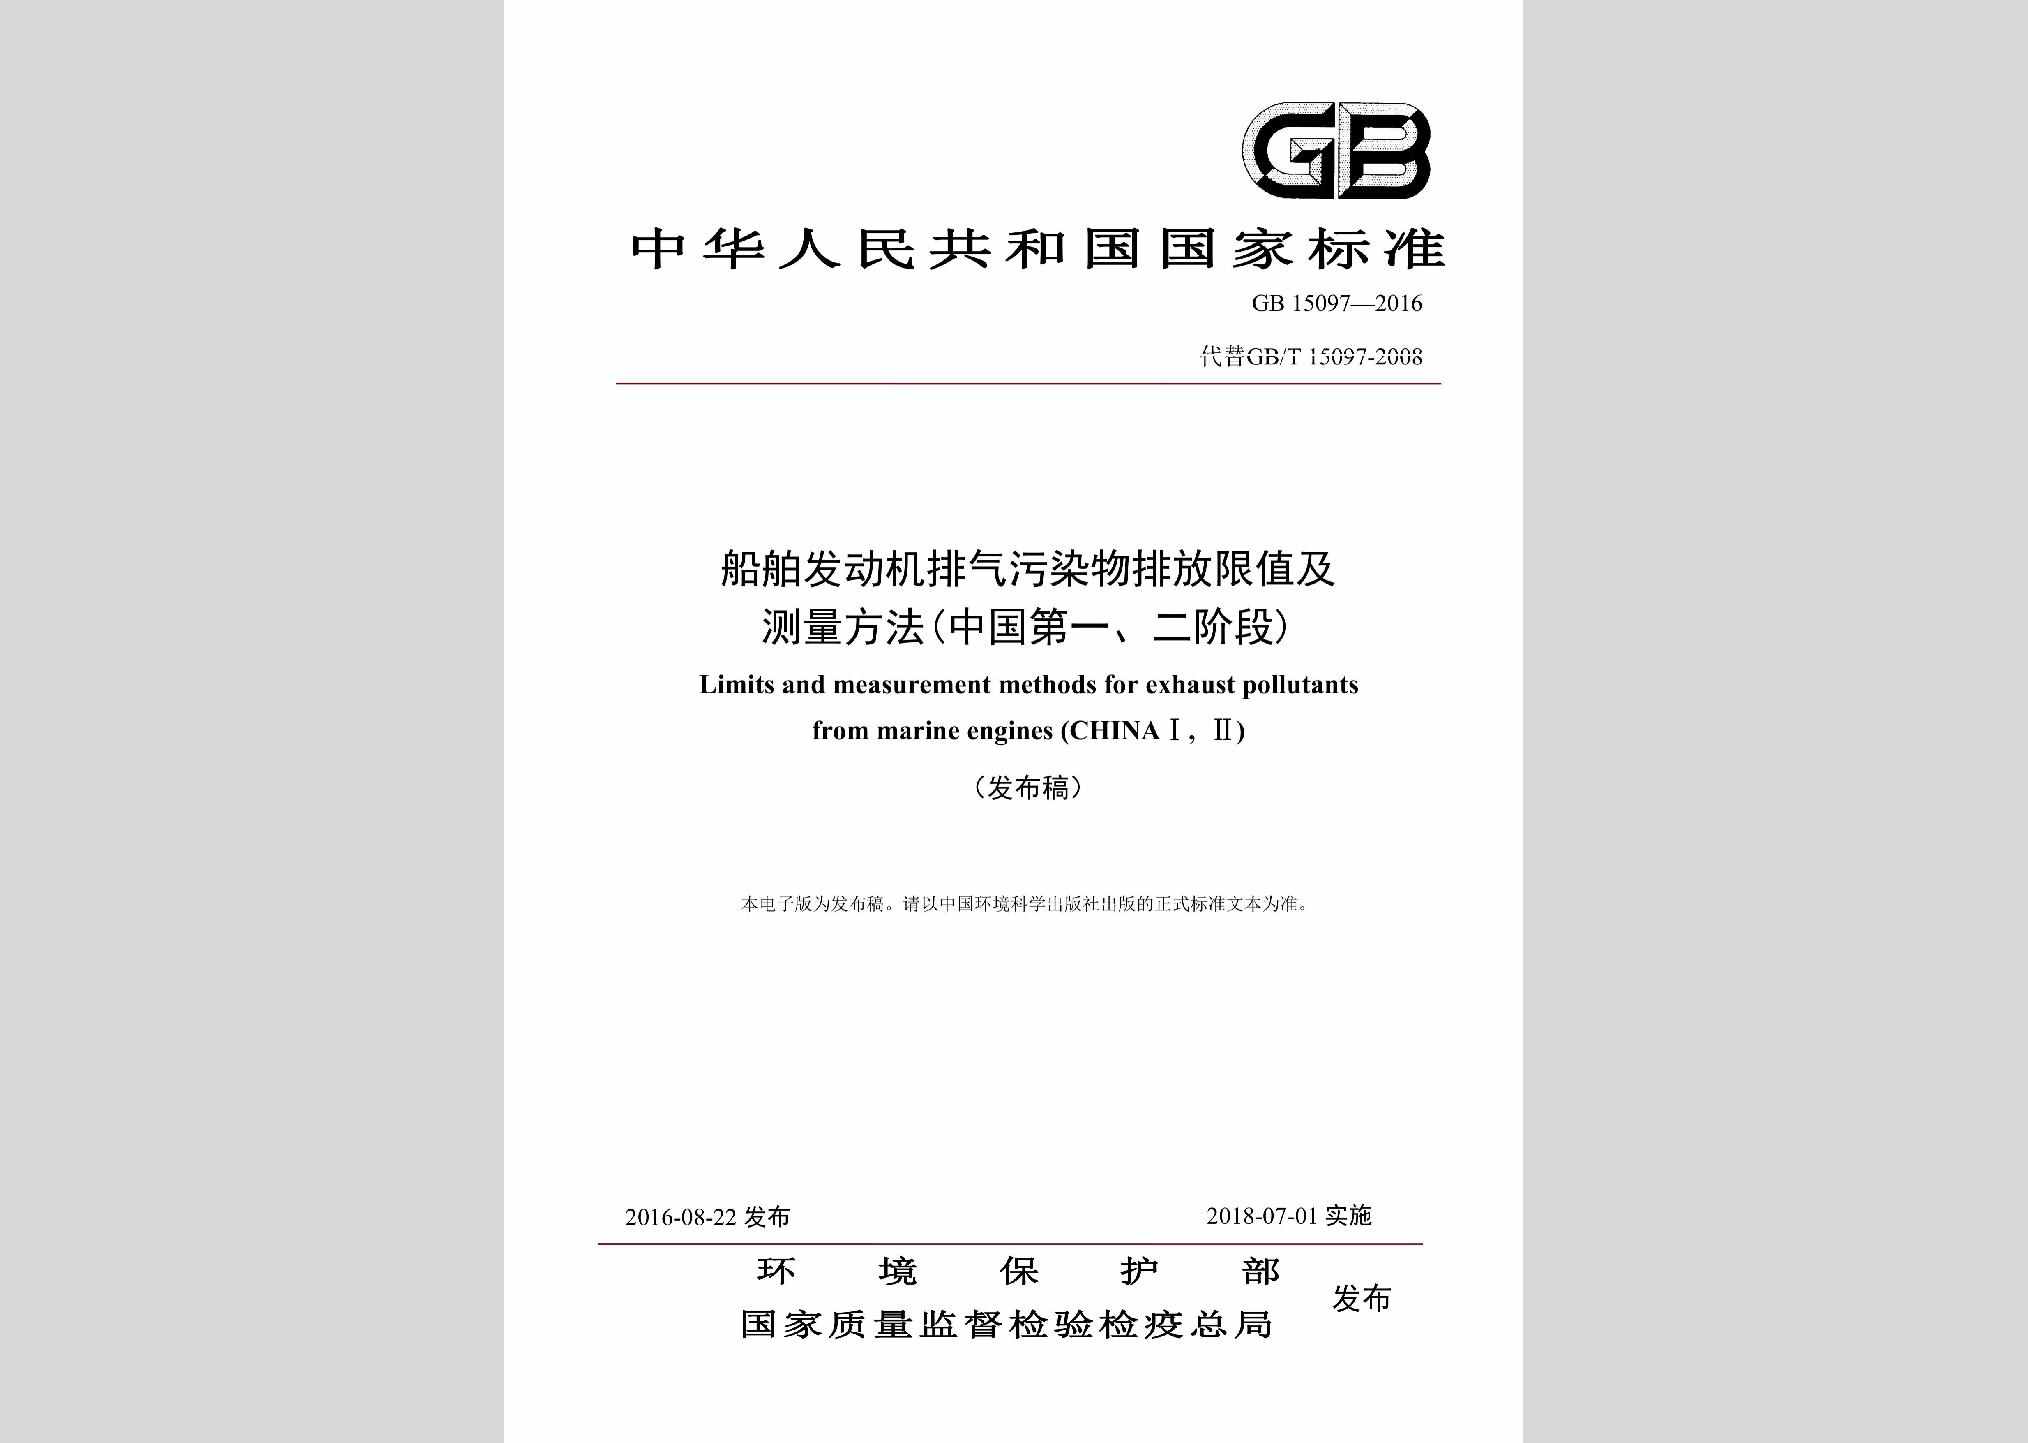 GB15097-2016：船舶发动机排气污染物排放限值及测量方法（中国第一、二阶段）